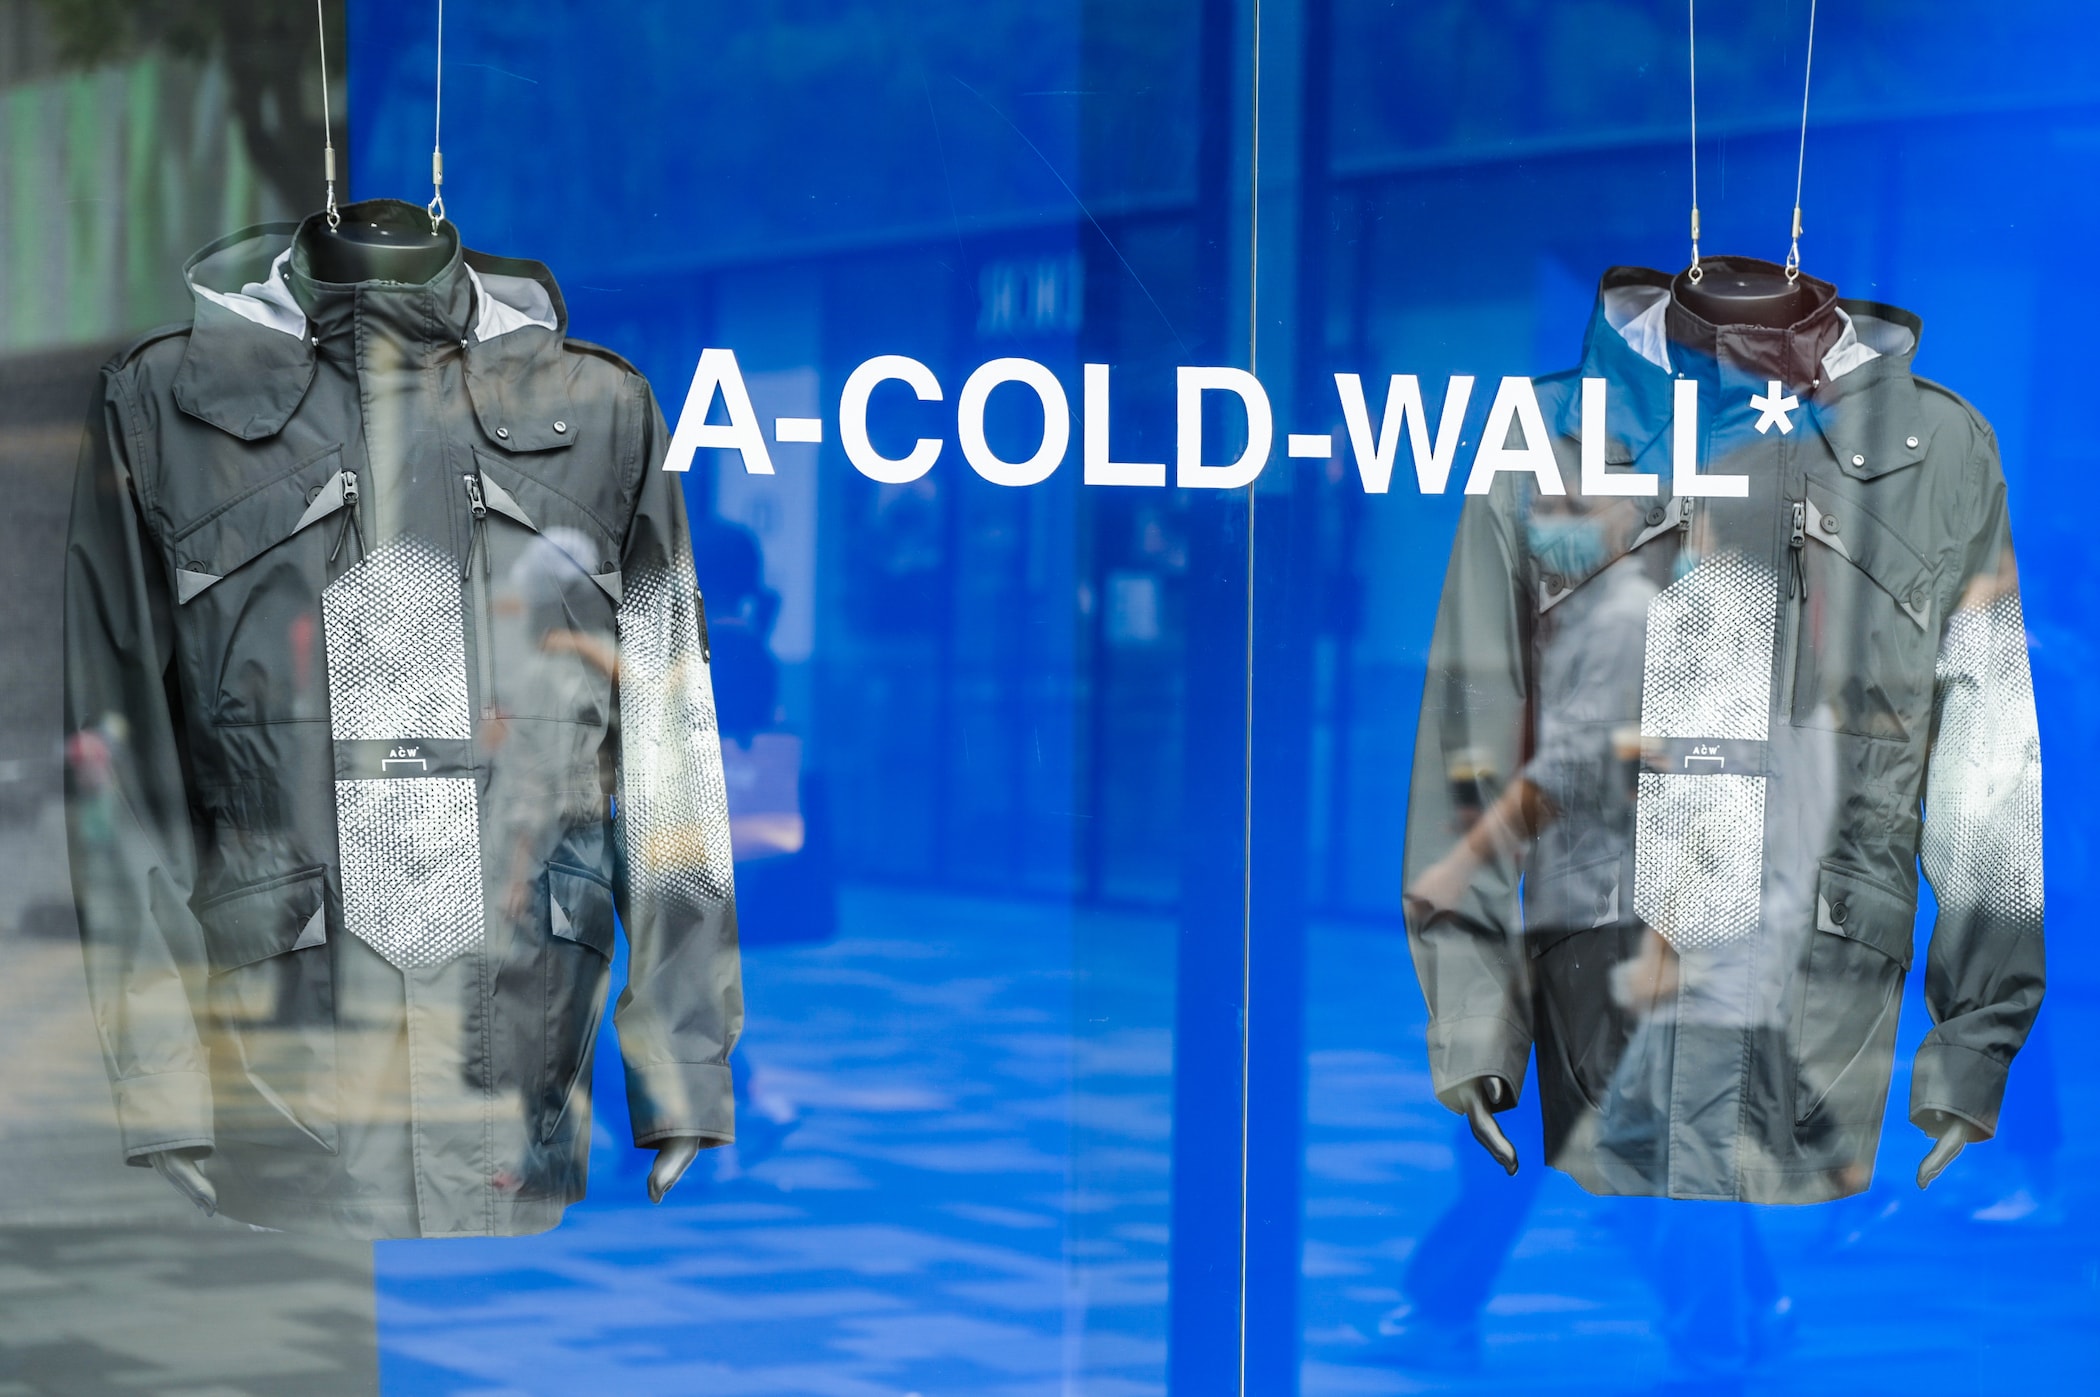 A-COLD-WALL* 于北京三里屯举办「超维触碰」互动装置展